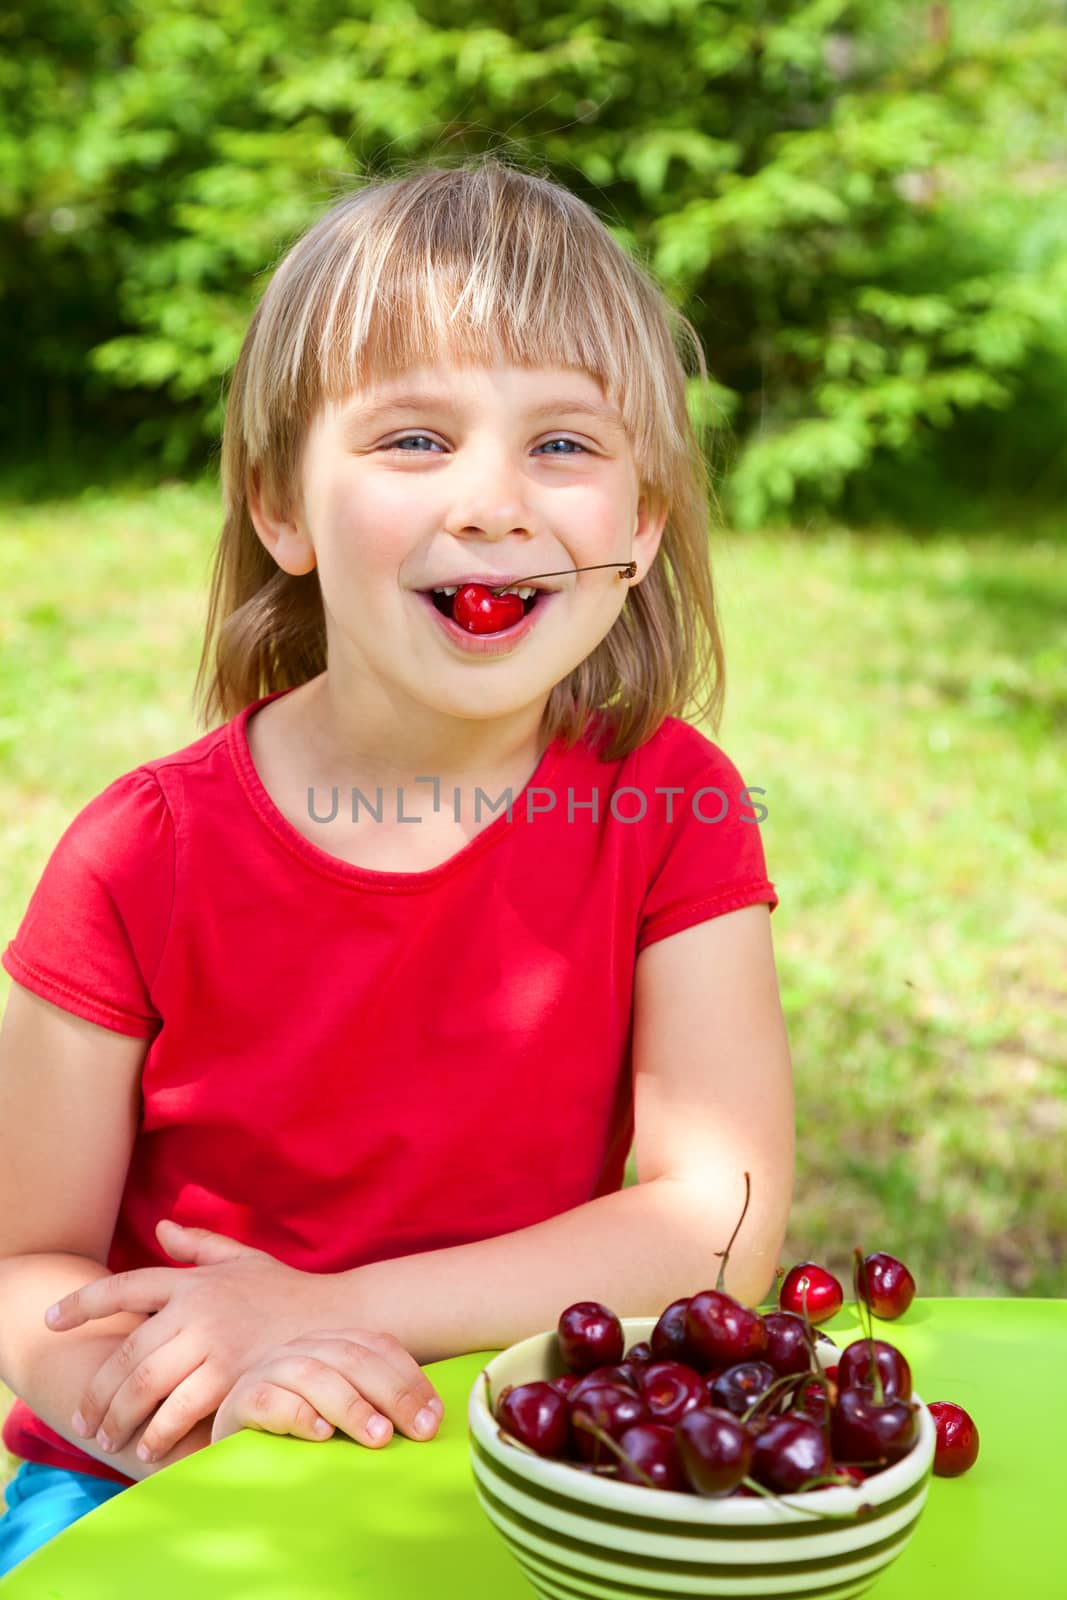 Child eating wild cherry by naumoid